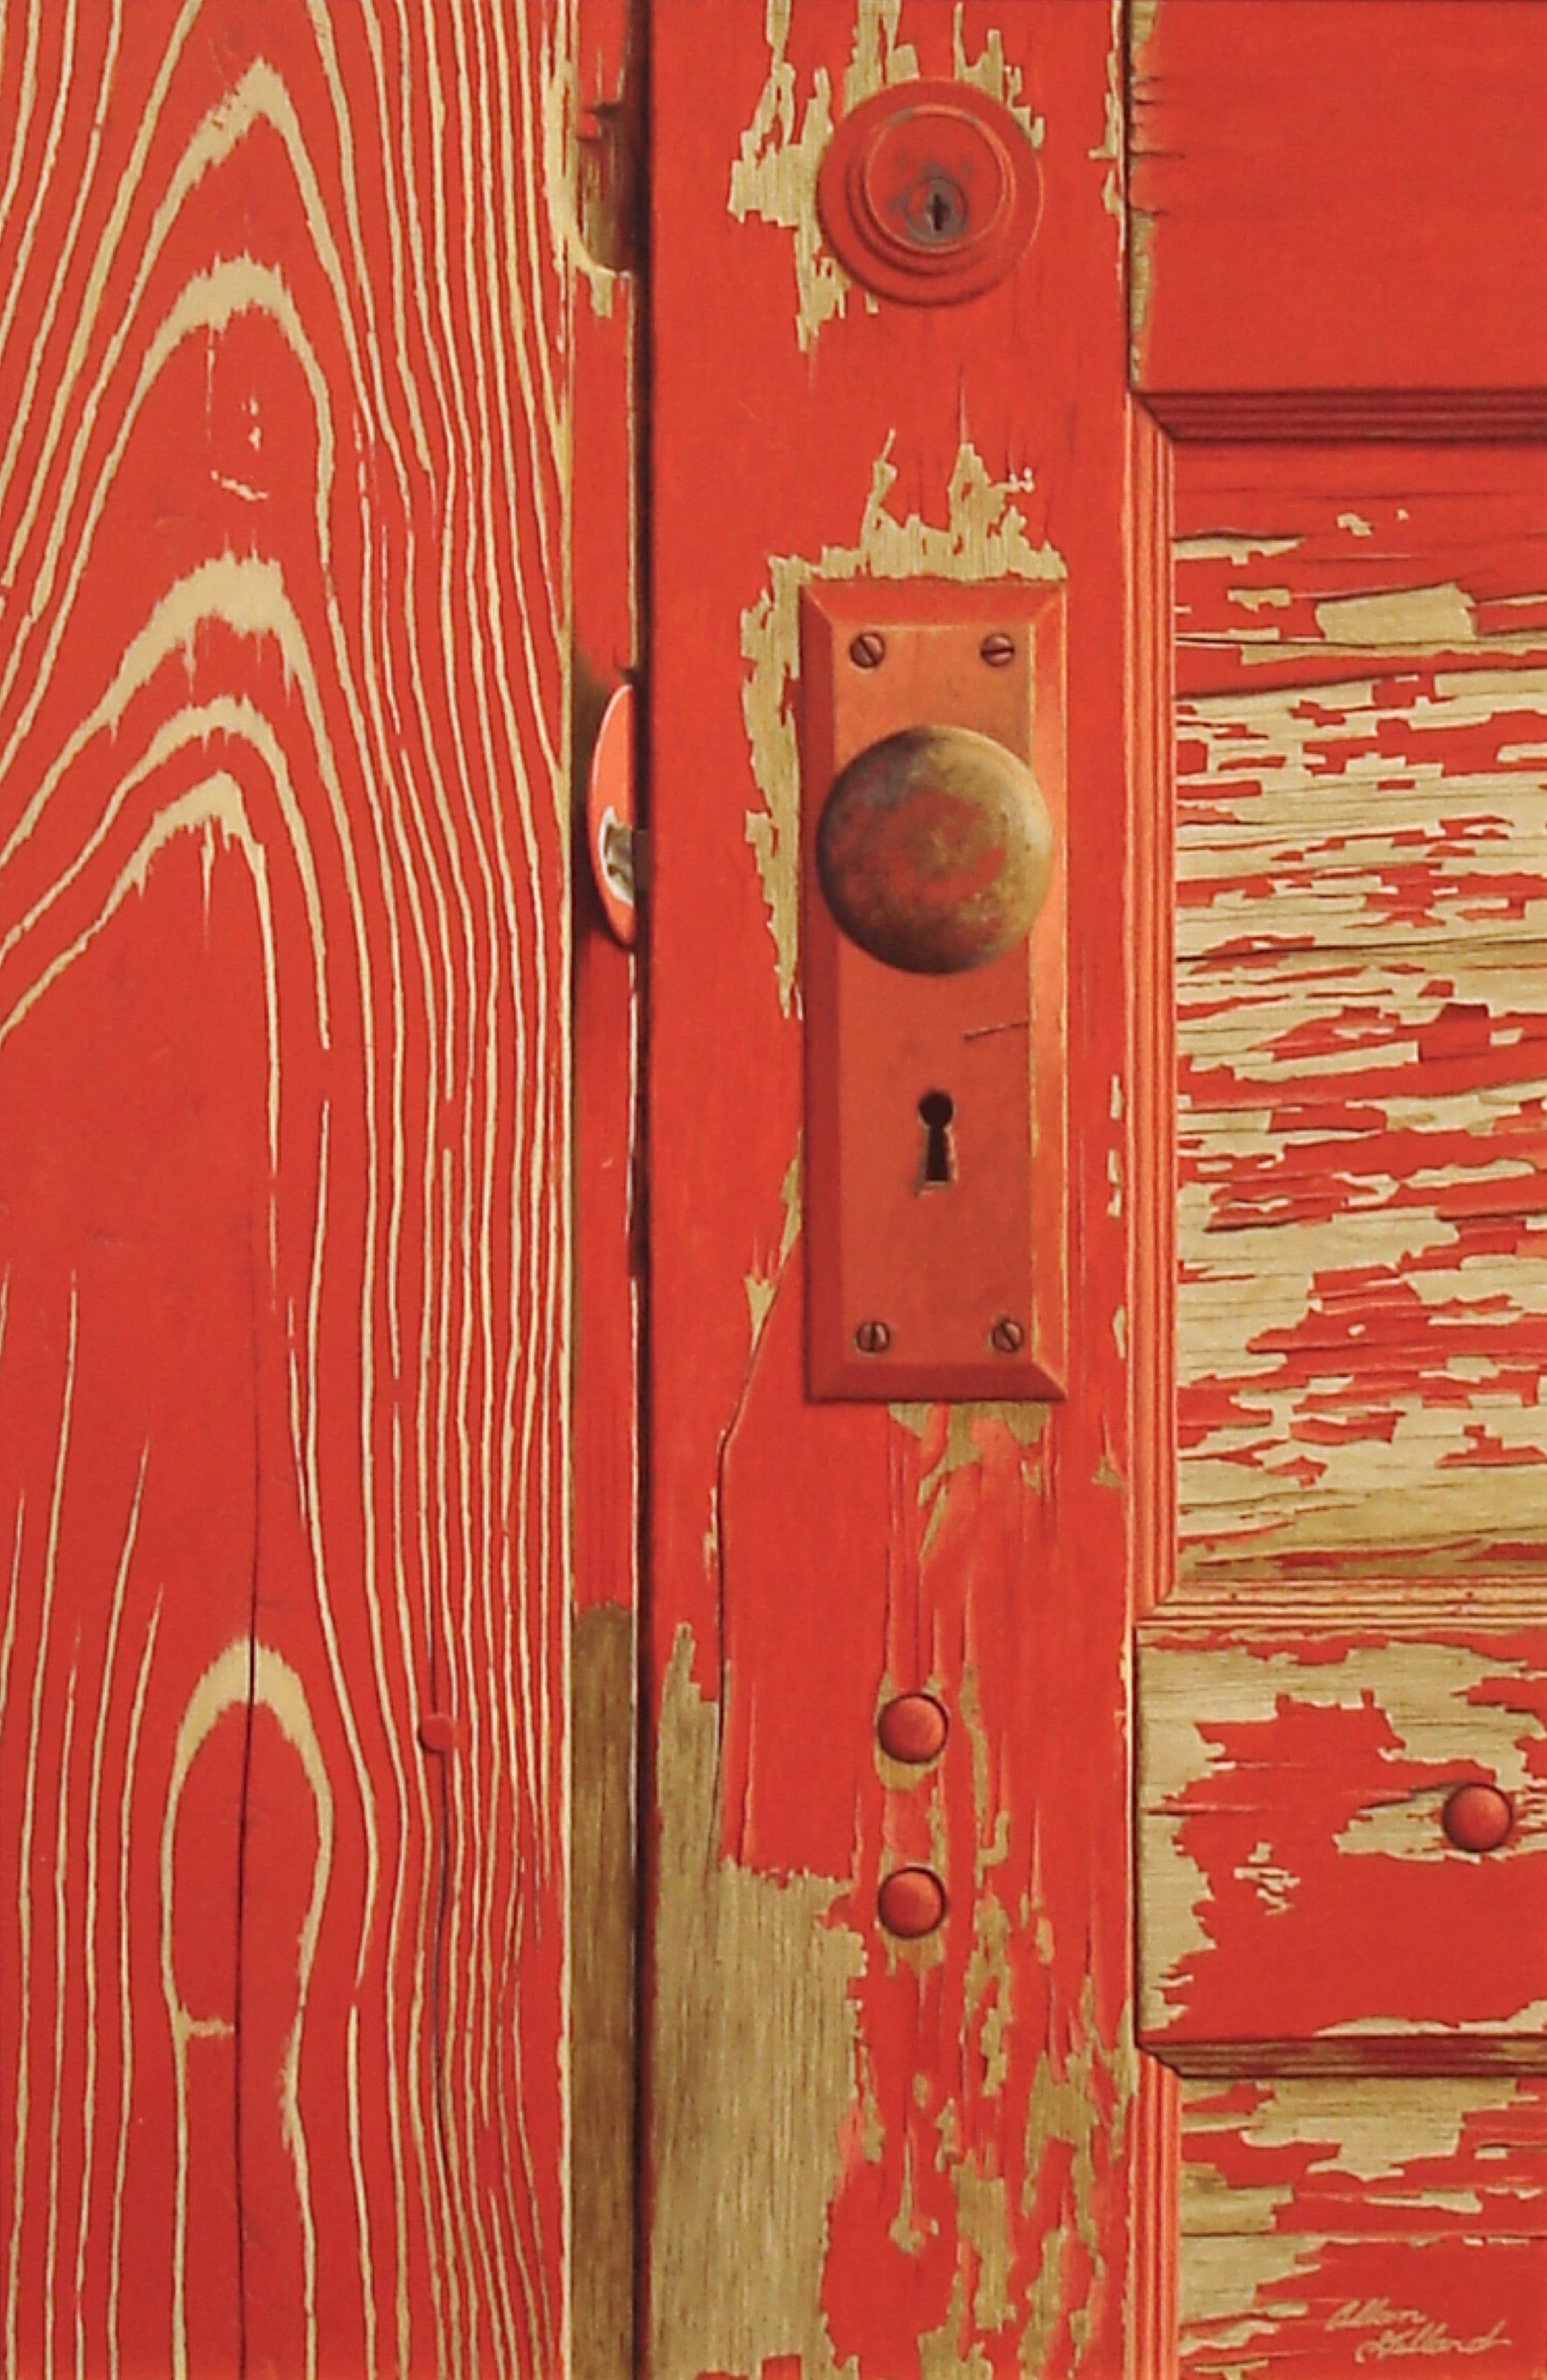 The Red Door by Allan Gillard